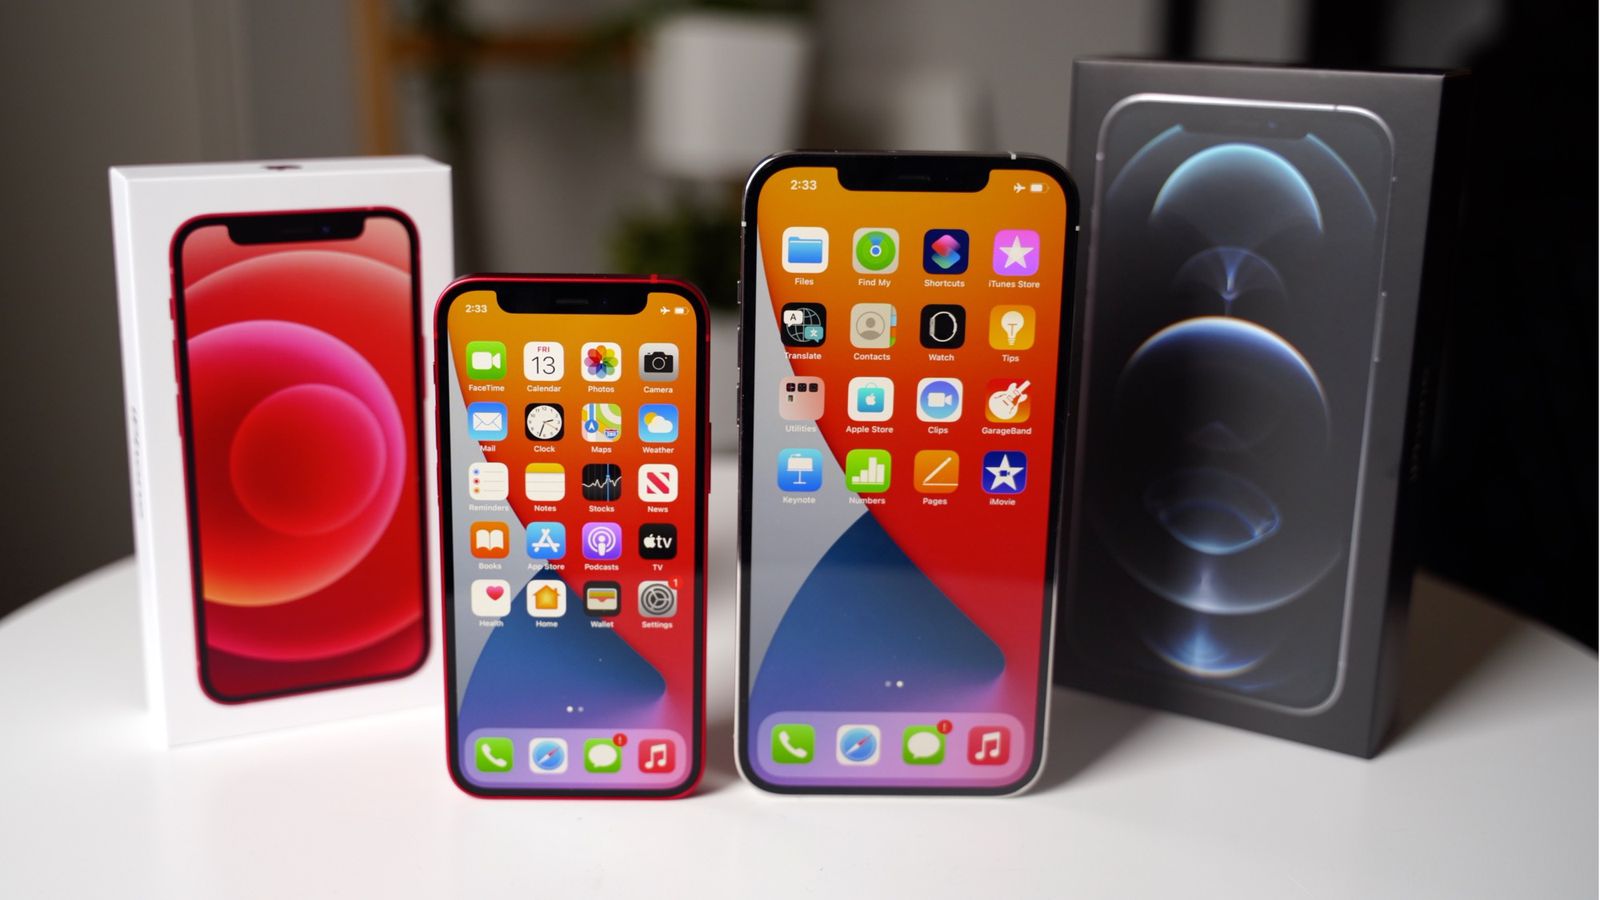 Apple iPhone 12 vs Mini vs Pro vs Pro Max: Which should you buy